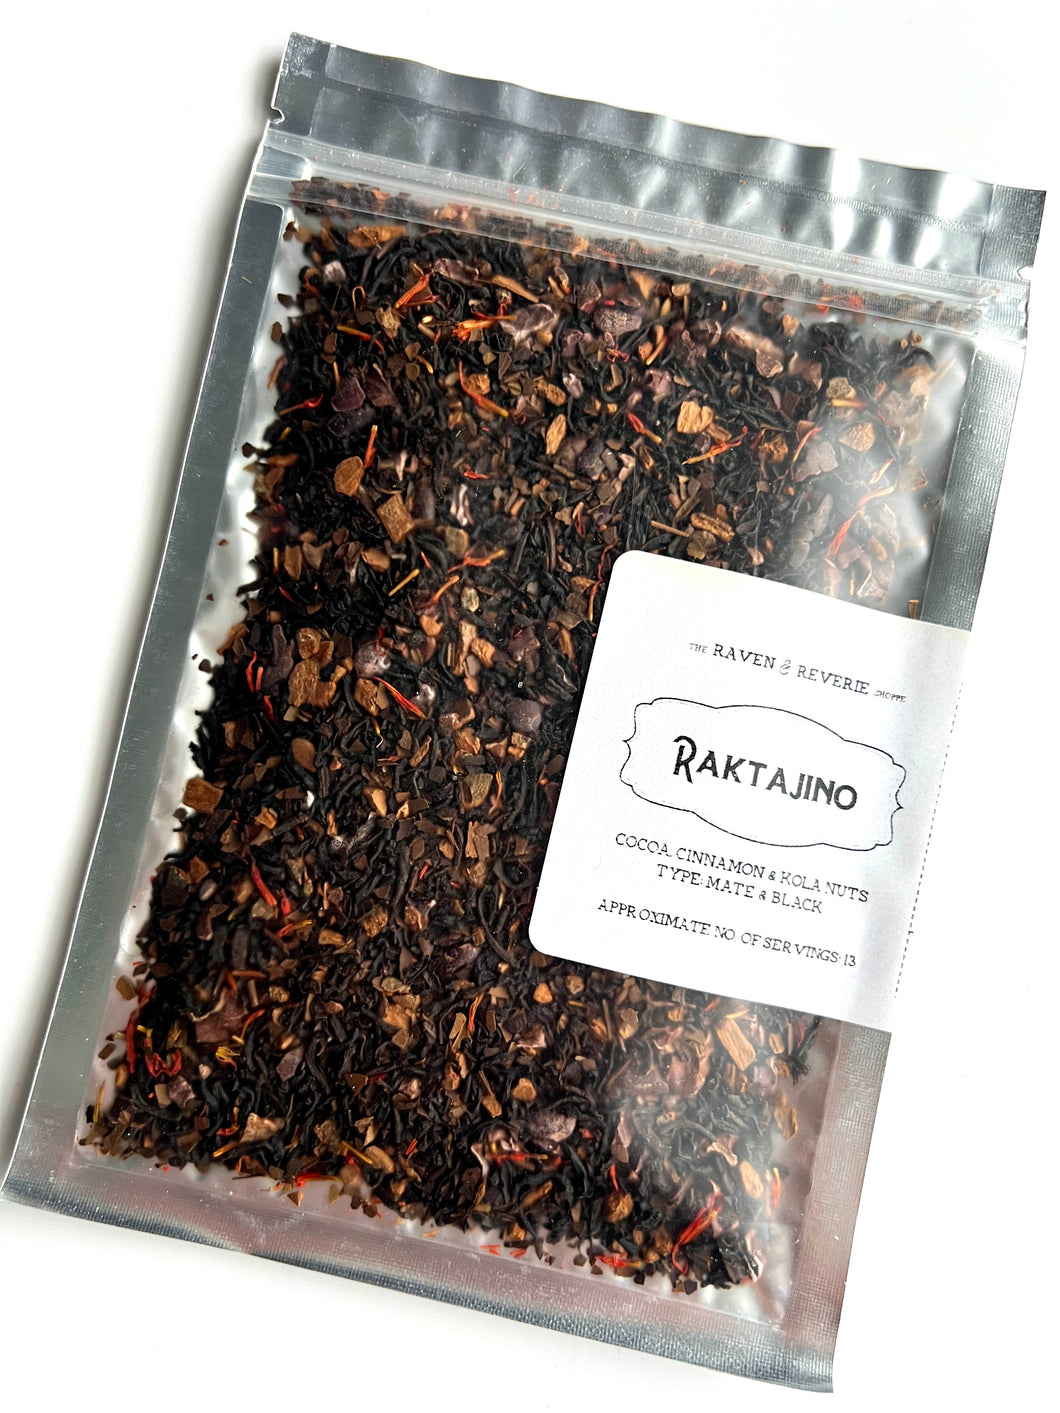 Raktajino - cocoa, cinnamon, kola nuts, mate and black loose leaf tea